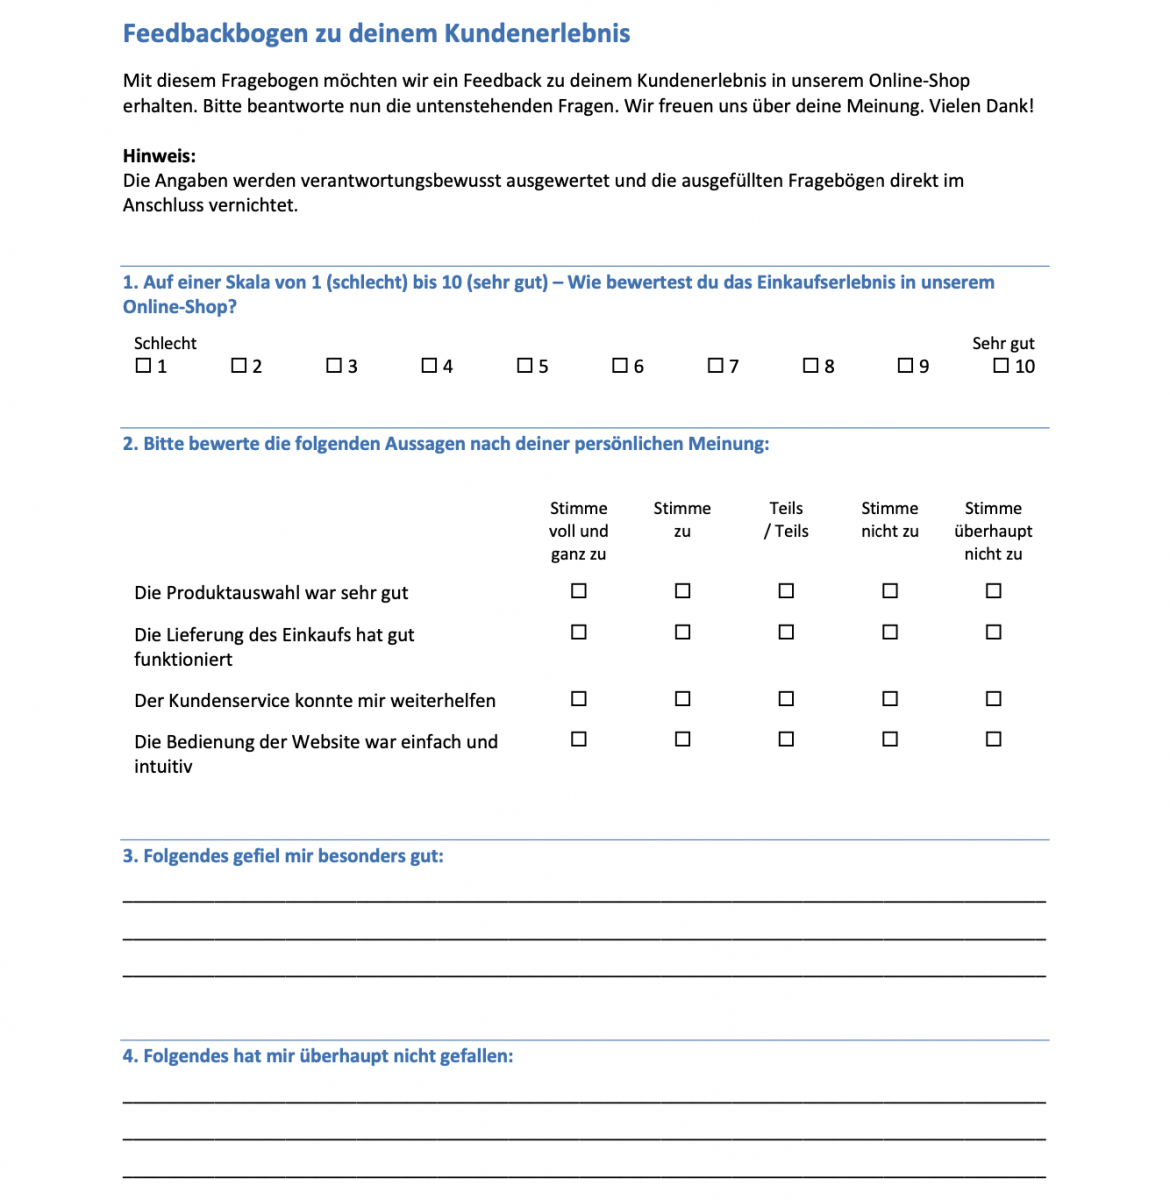 Vorlagen Beispiele And Muster Für Umfragen Und Fragebögen Empirio 9520